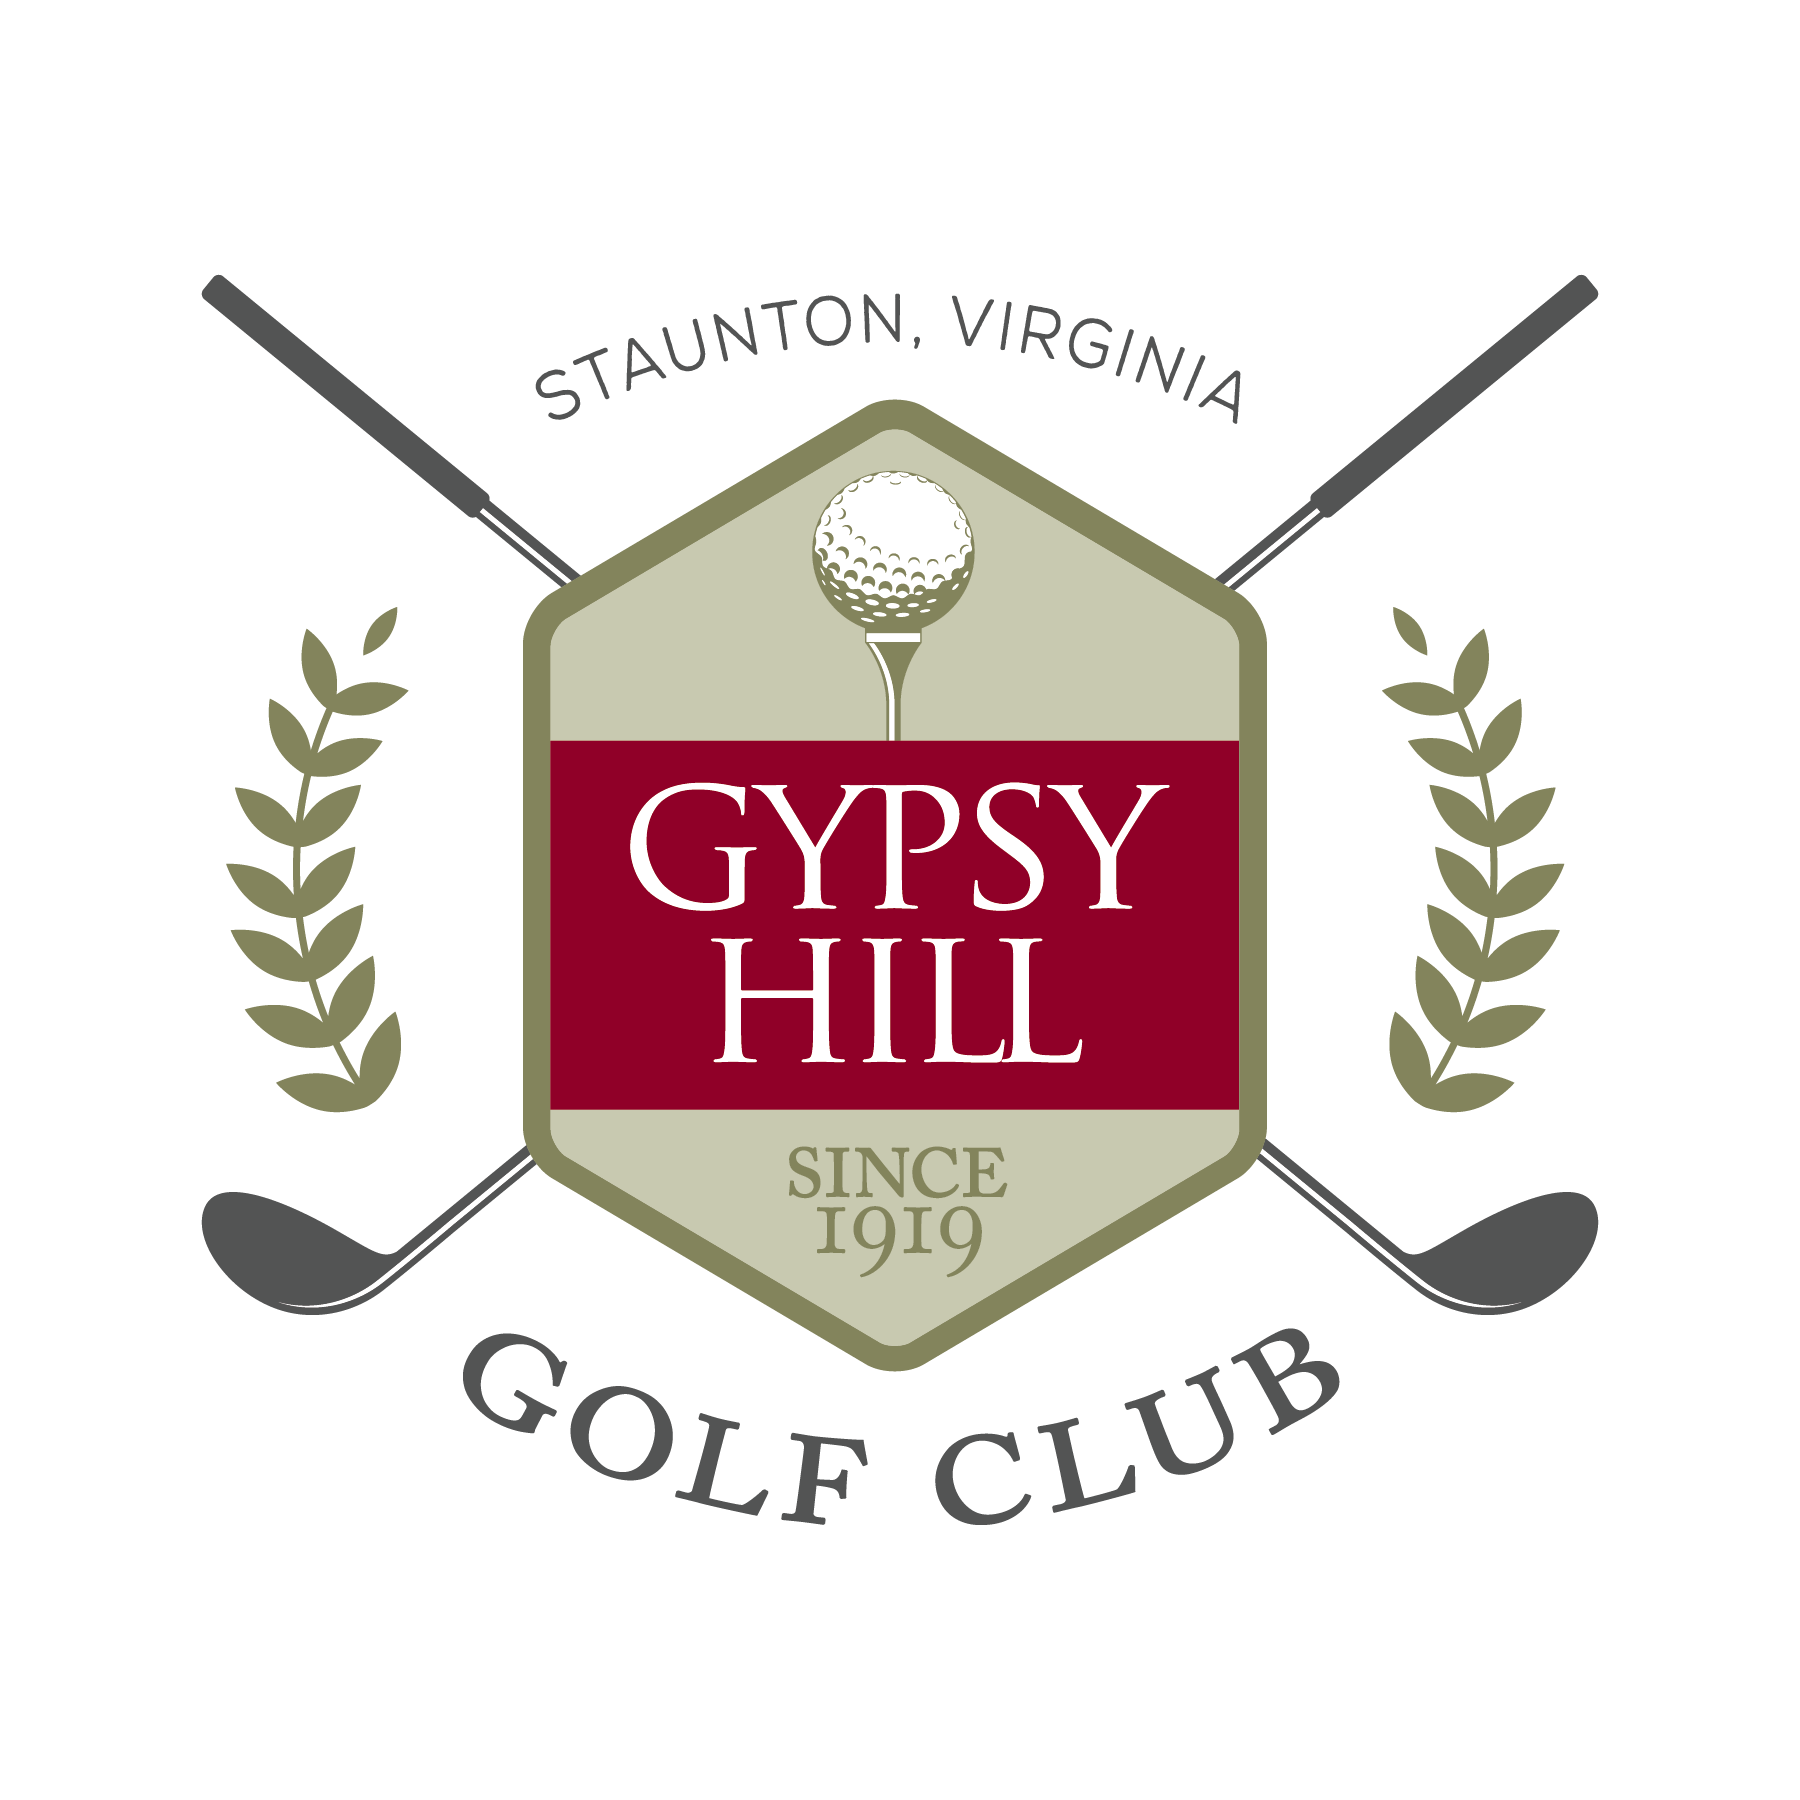 Golf Club Logo - Gypsy Hill Golf Club. City of Staunton